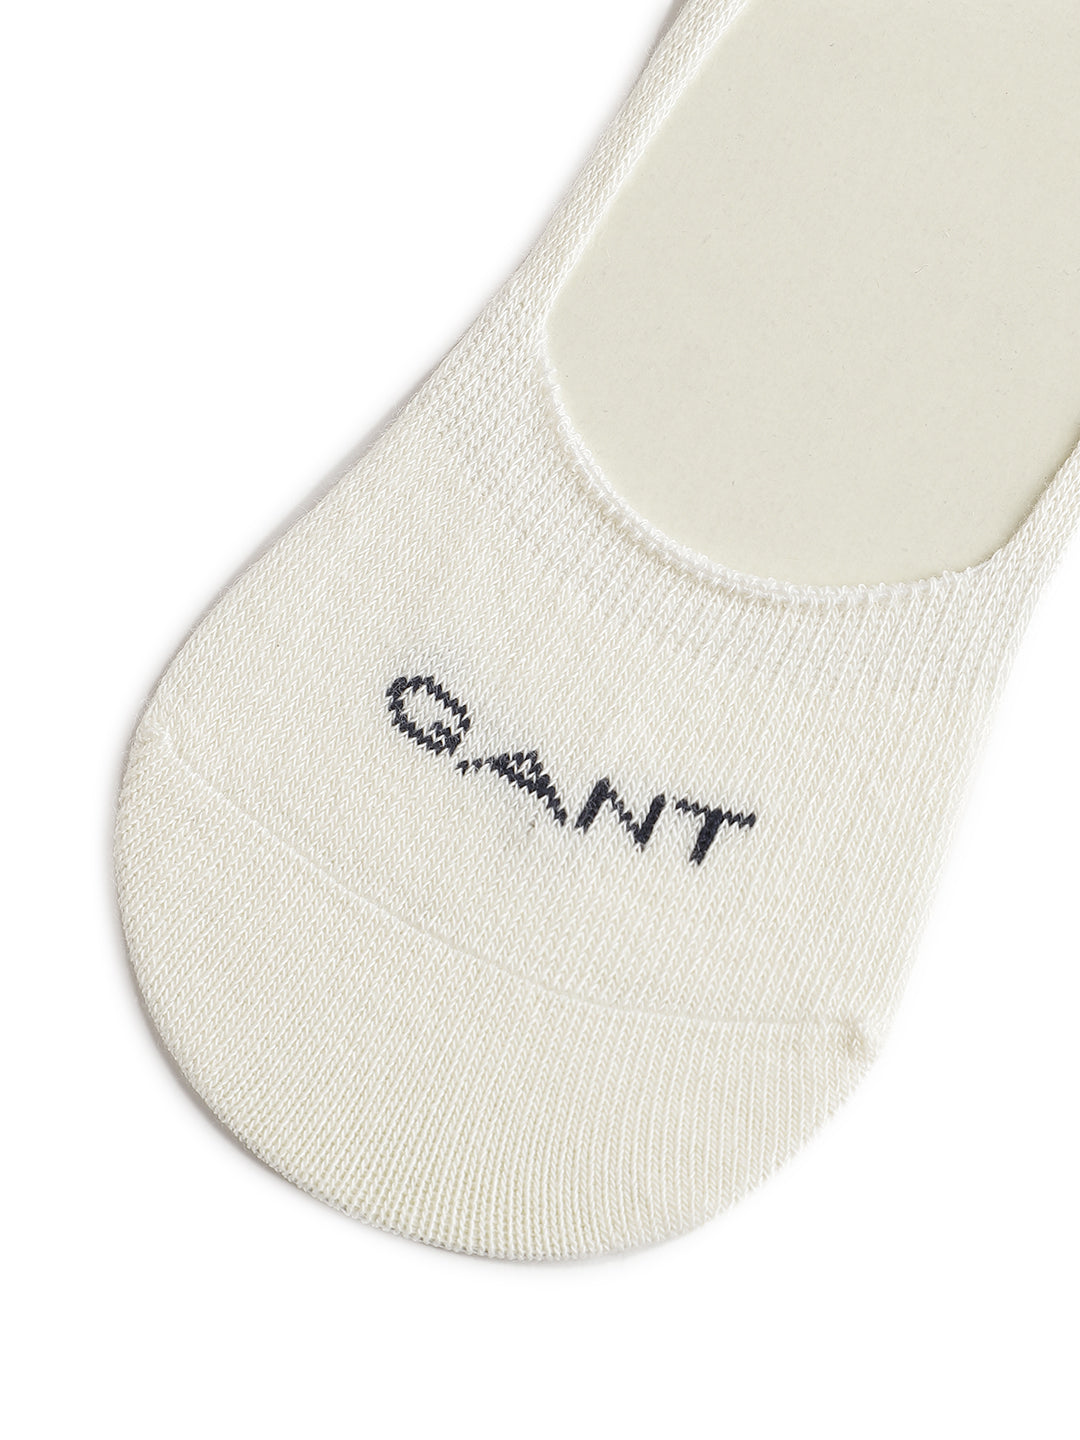 Gant Women Off White Solid Socks (Pack of 2)